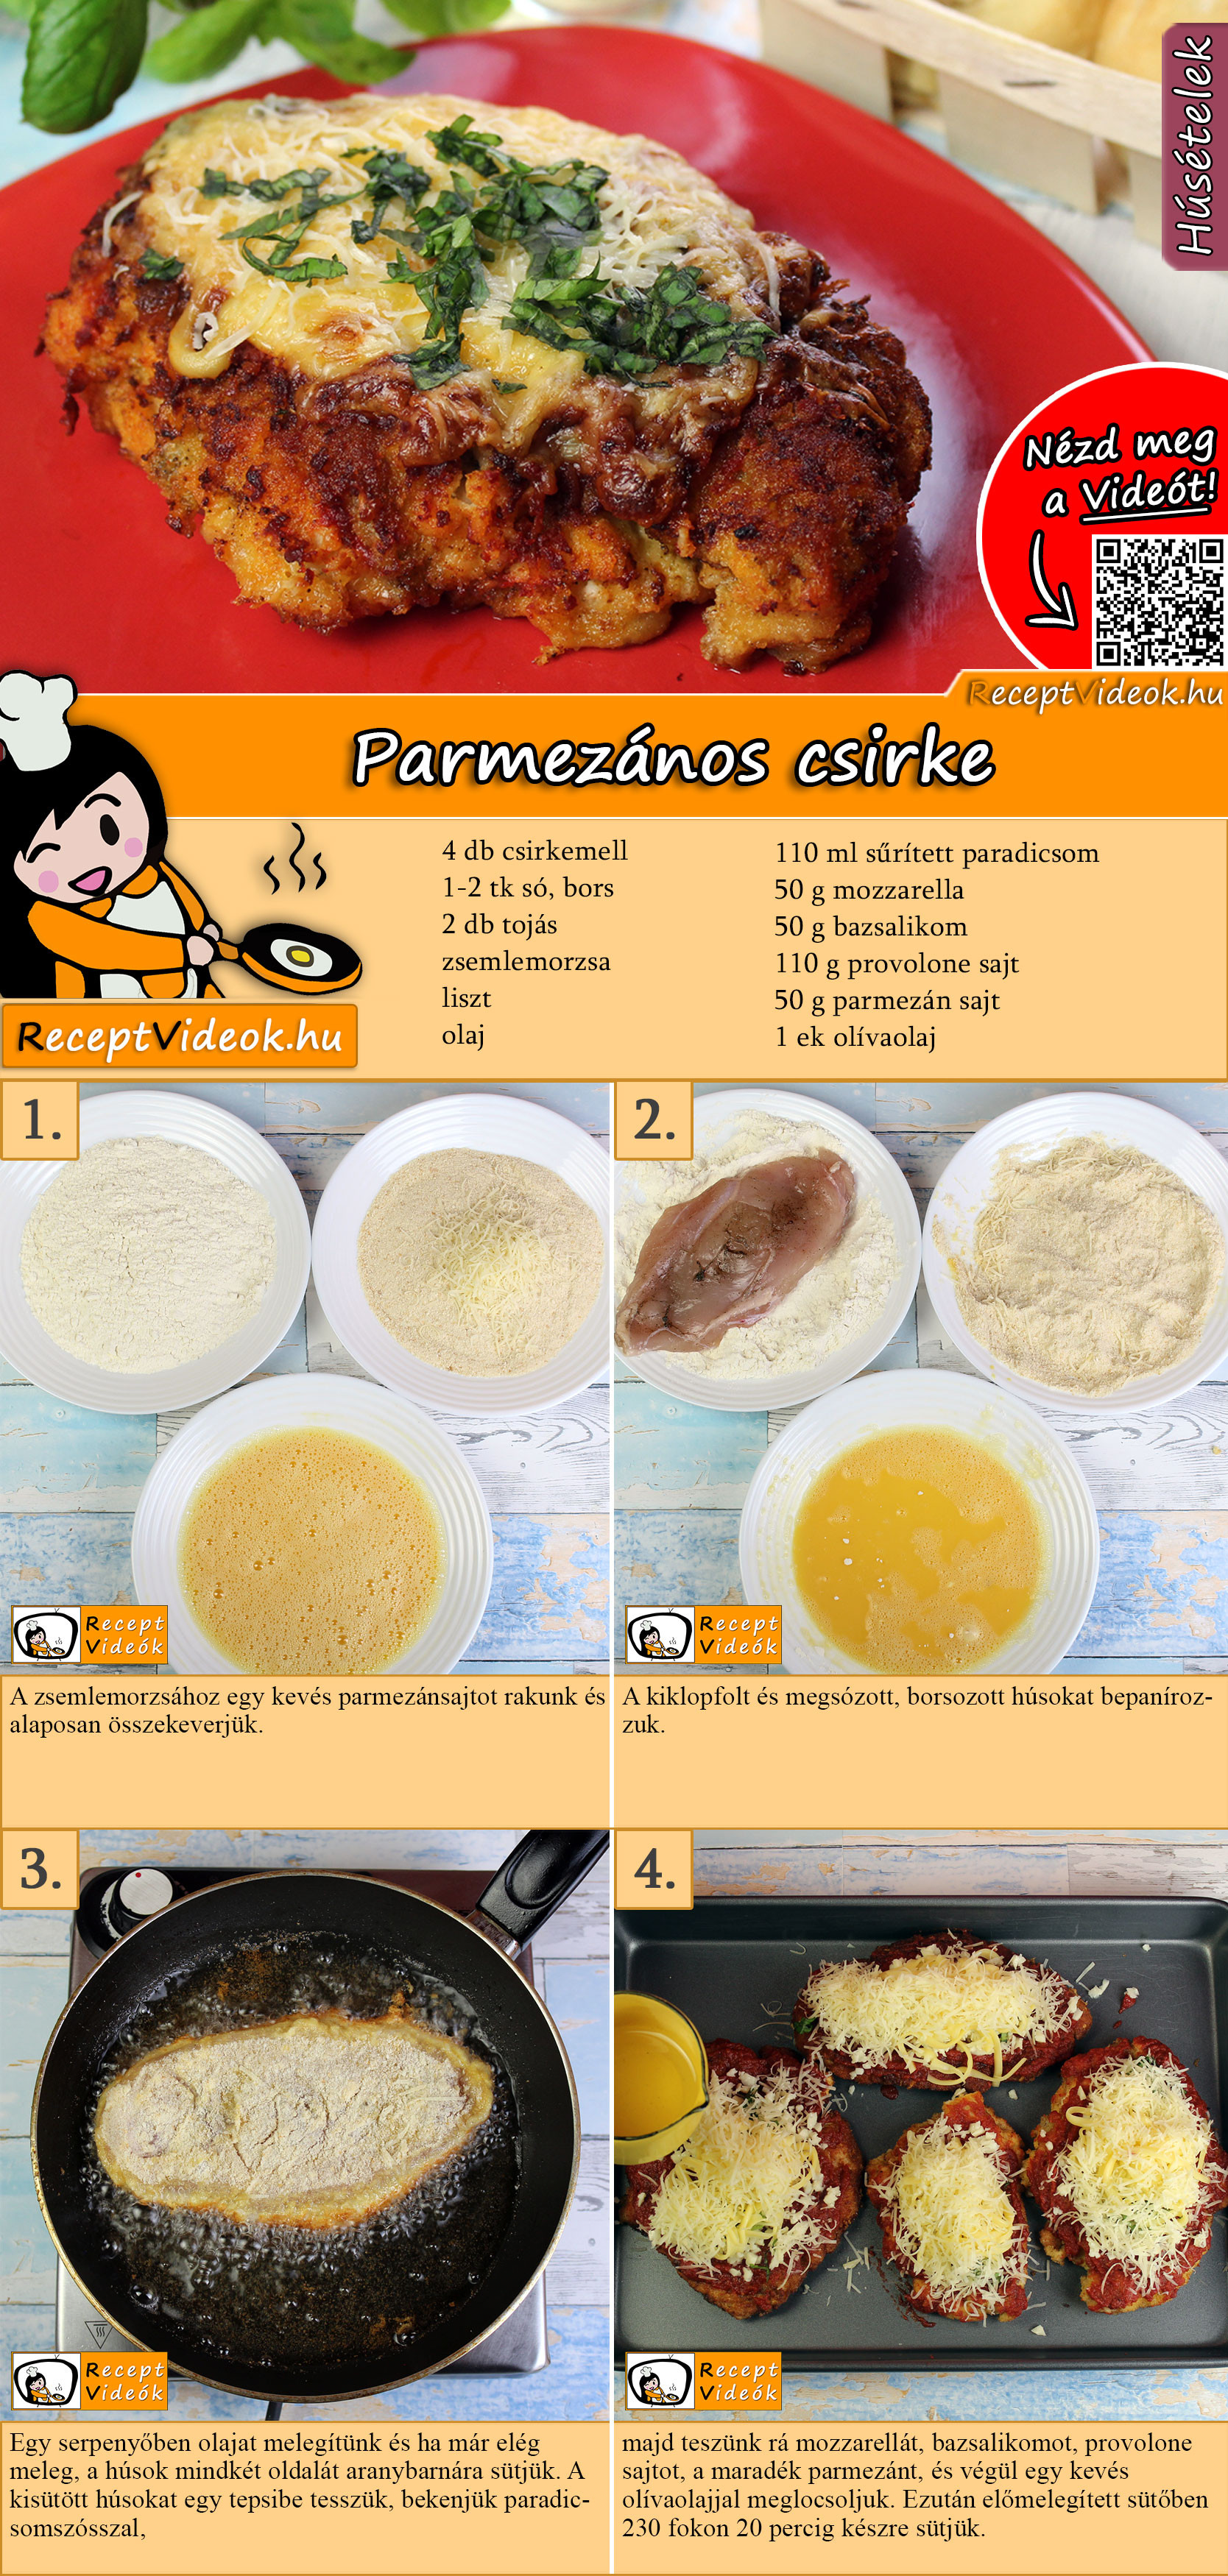 Parmezános csirke recept elkészítése videóval